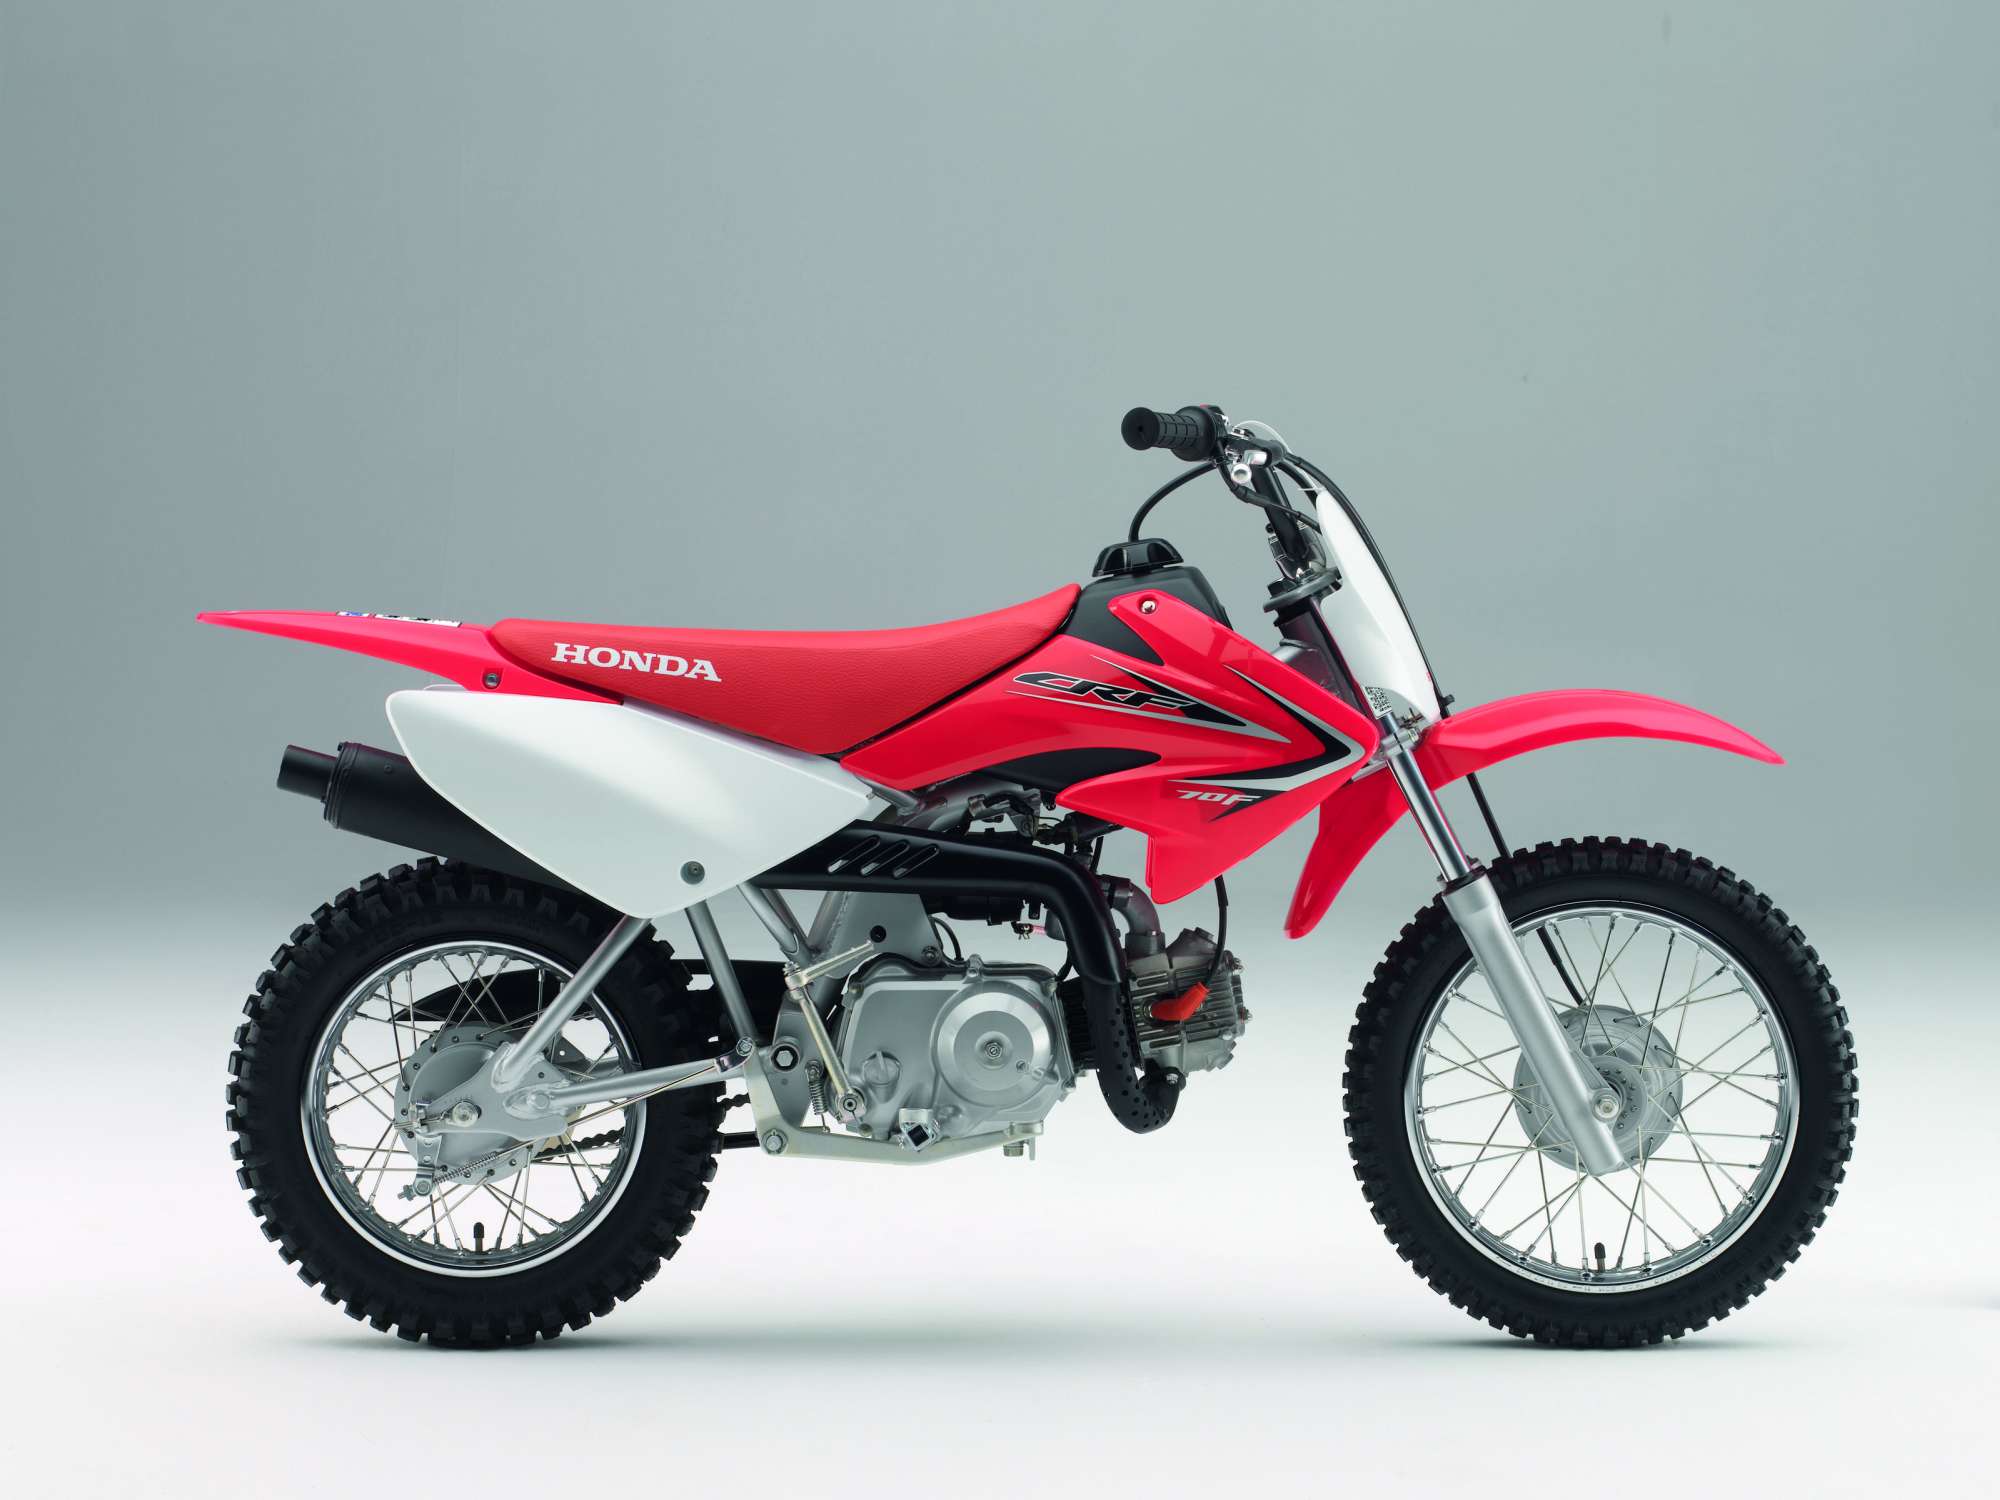 Gebrauchte und neue Honda CRF 70 F Motorräder kaufen